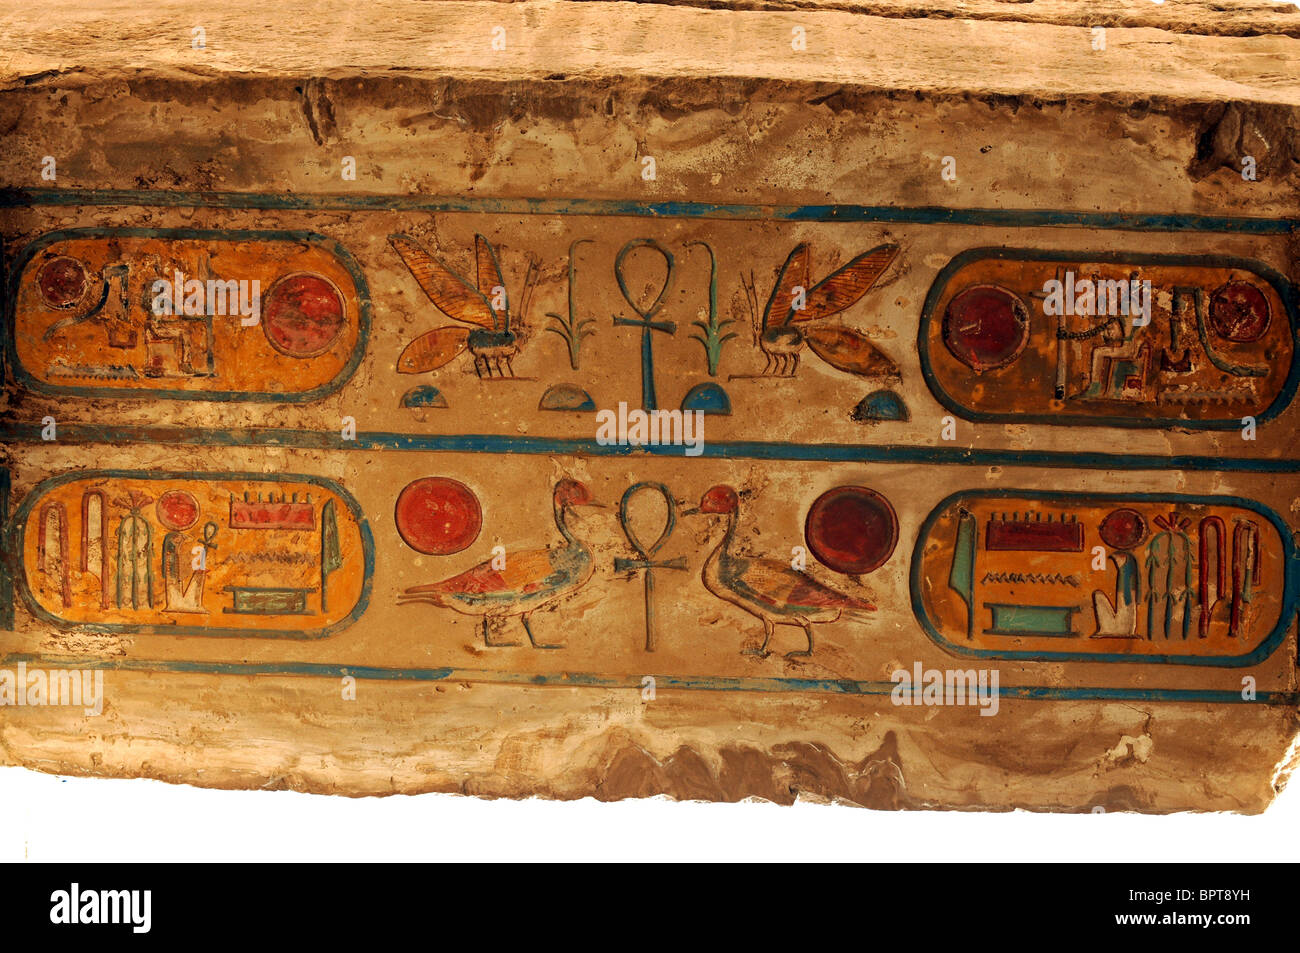 Temple de Karnak, Louxor, Egypte. Kartushs peint quelque 2 500 ans et toujours très coloré. Karnak, Egypte. Banque D'Images